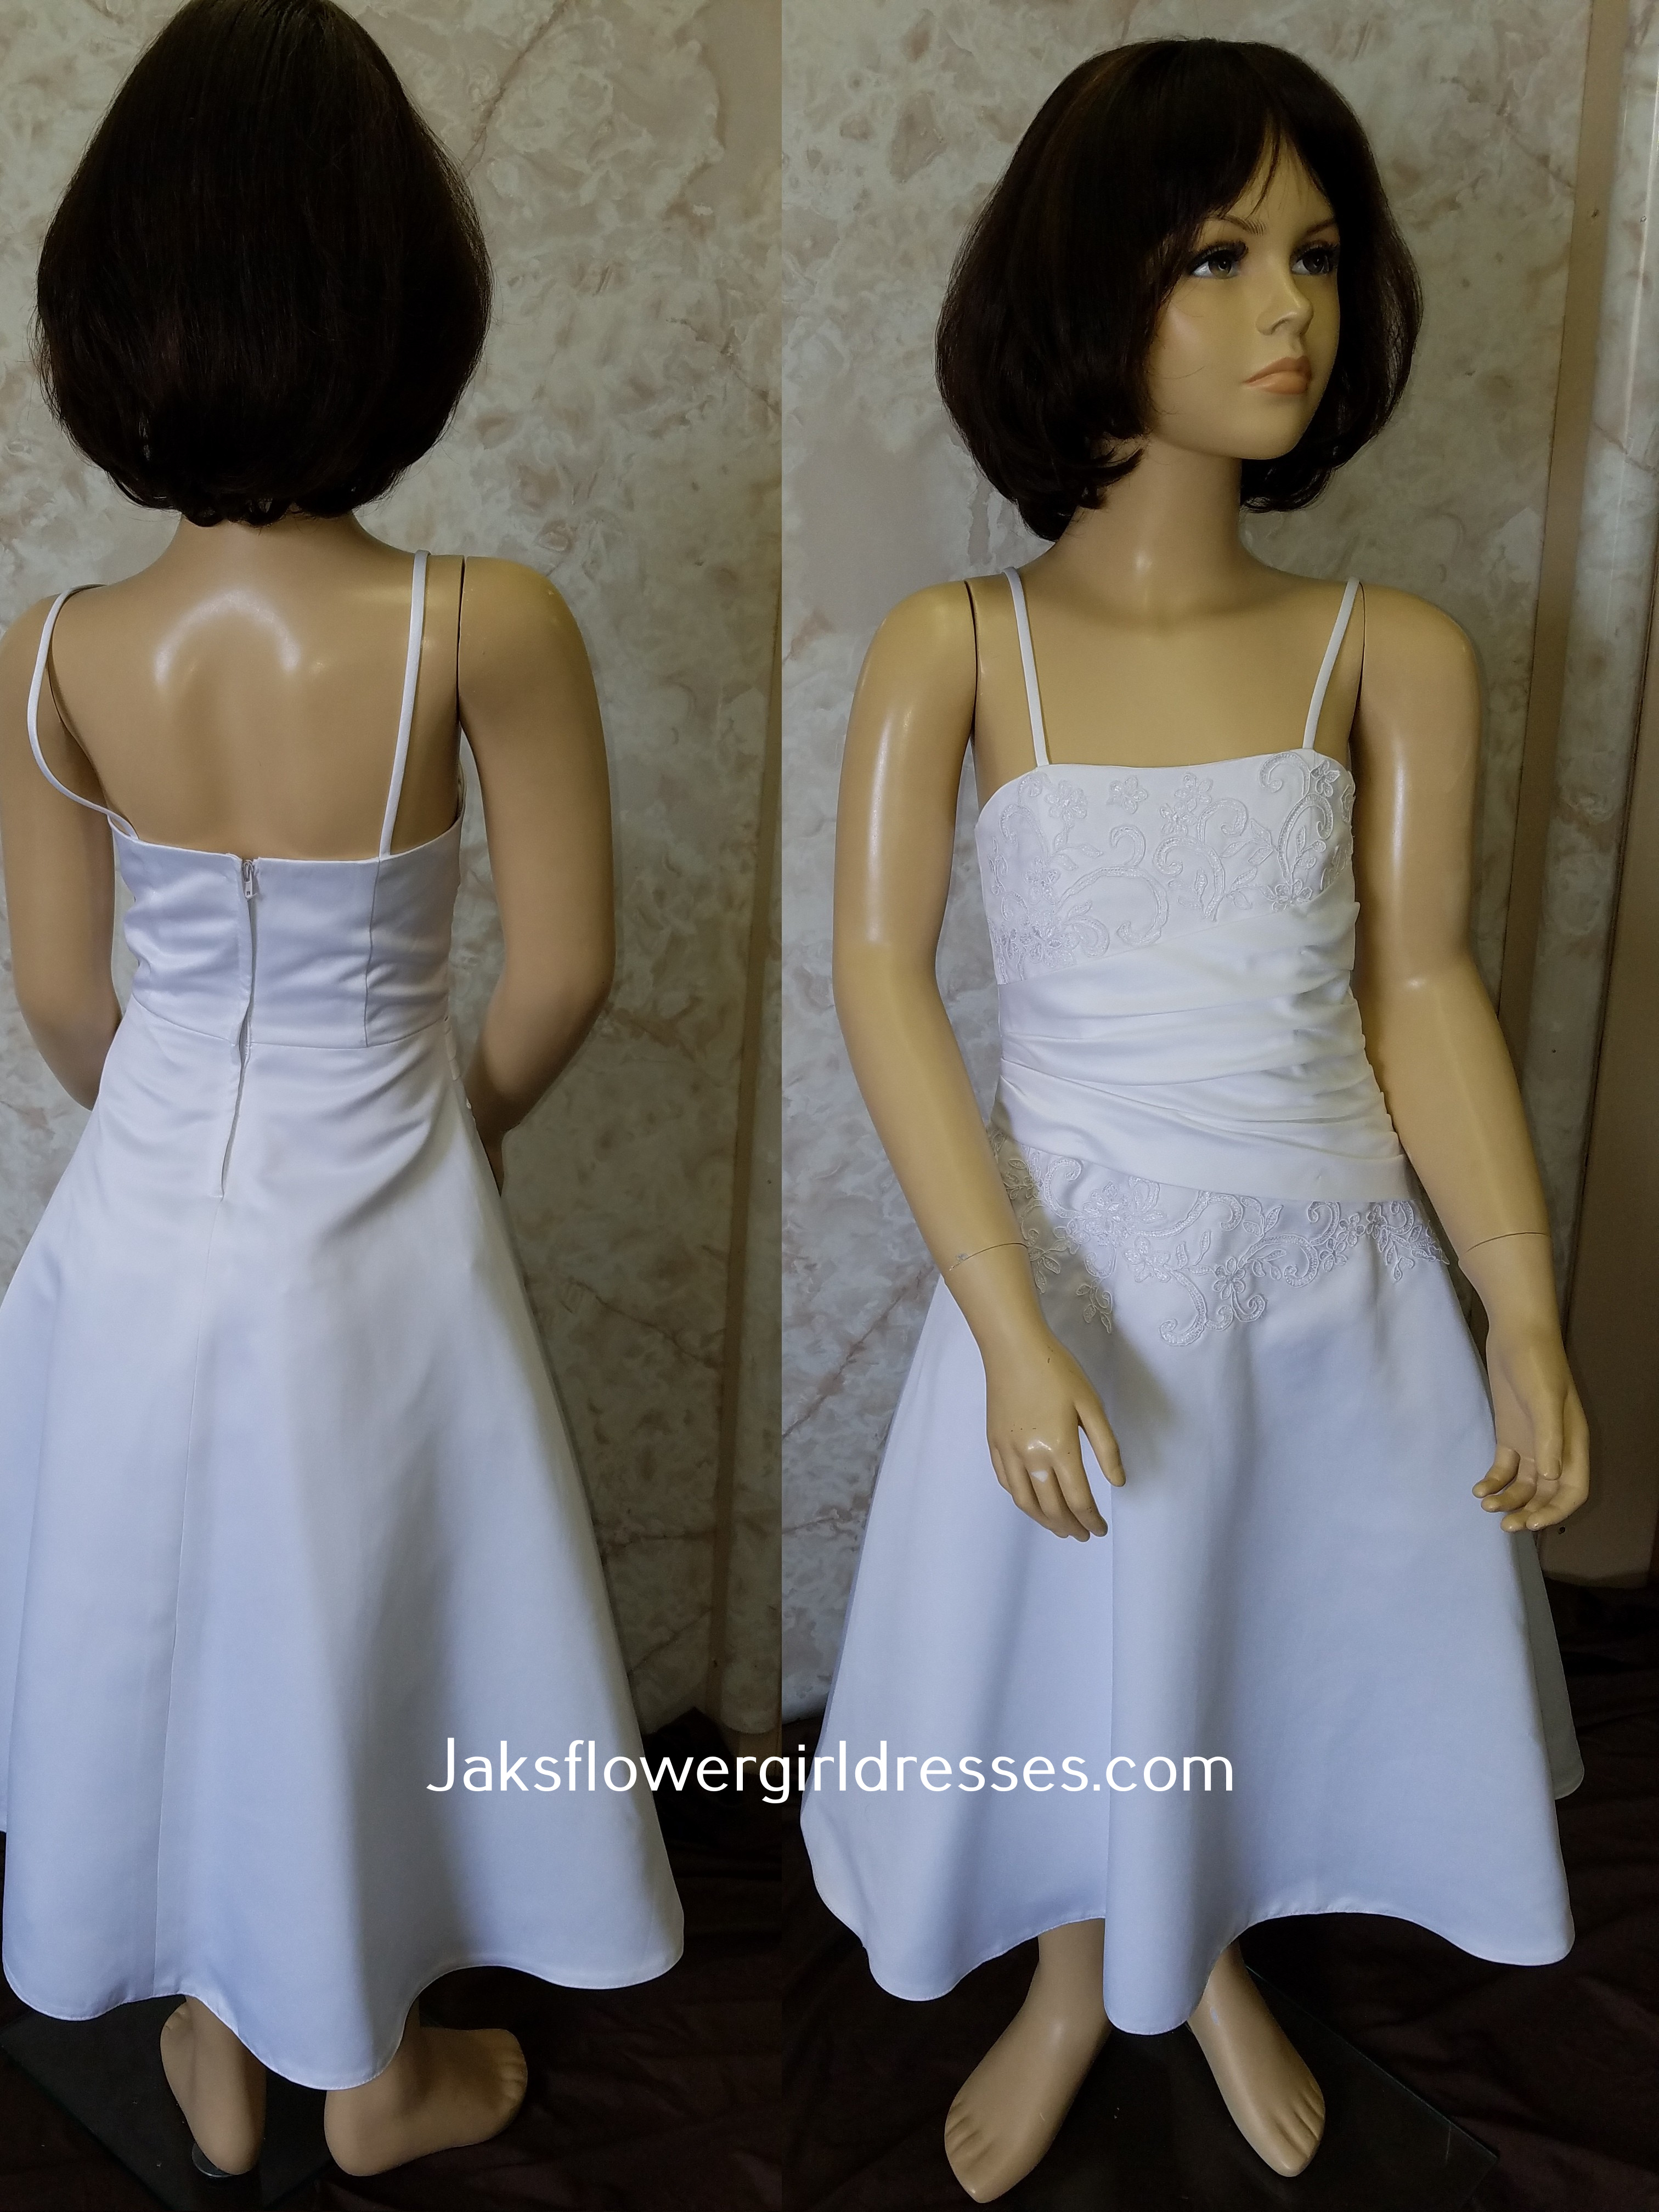 Long white dresses